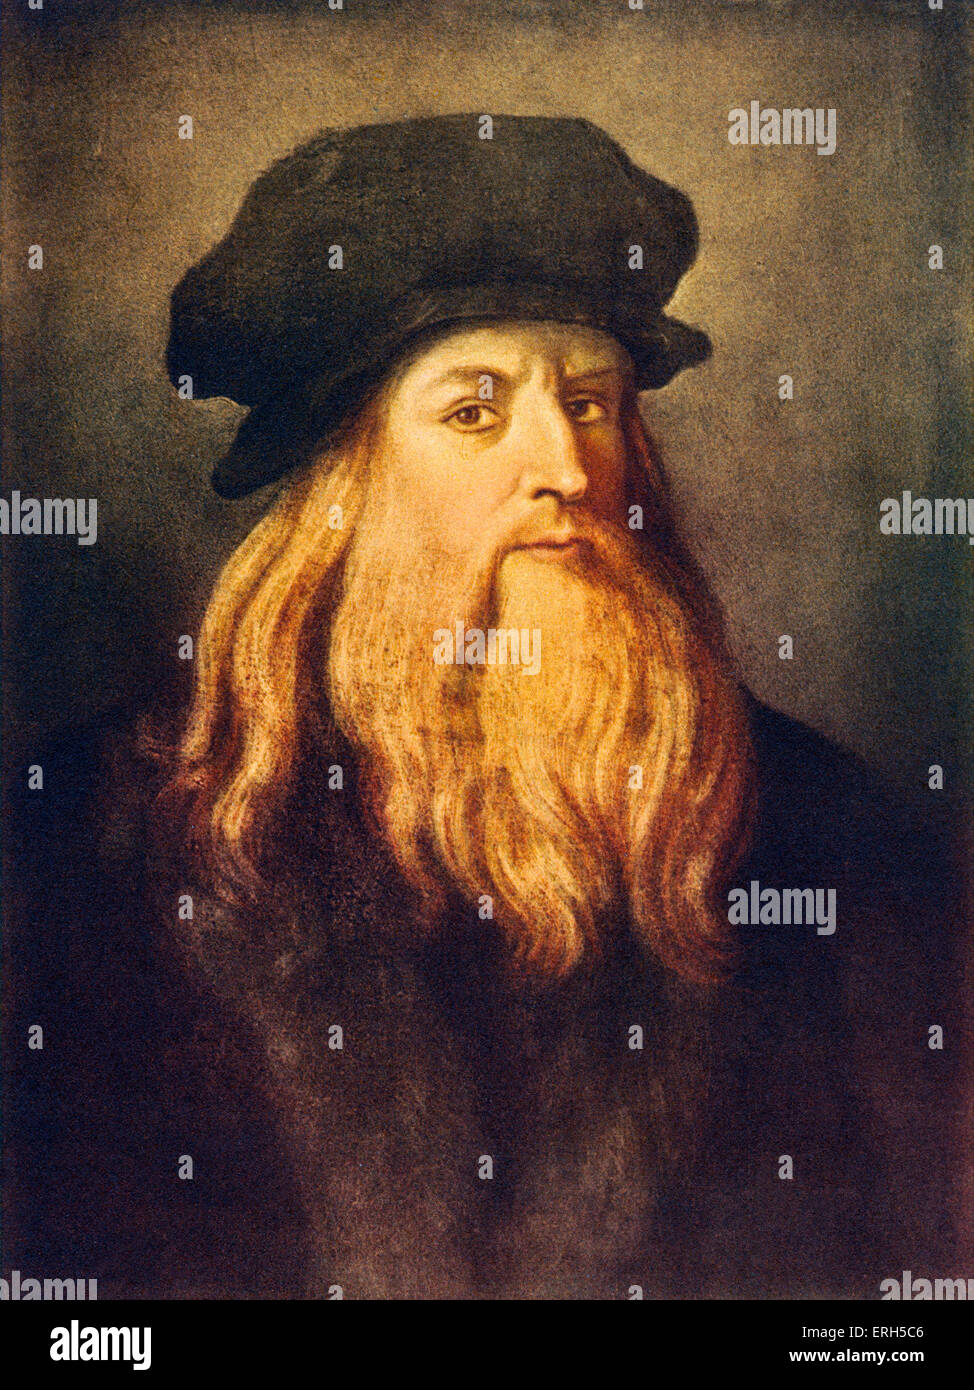 Leonardo da Vinci - ritratto di auto del rinascimento italiano pittore, scultore, scrittore, scienziato, architetto e ingegnere Foto Stock